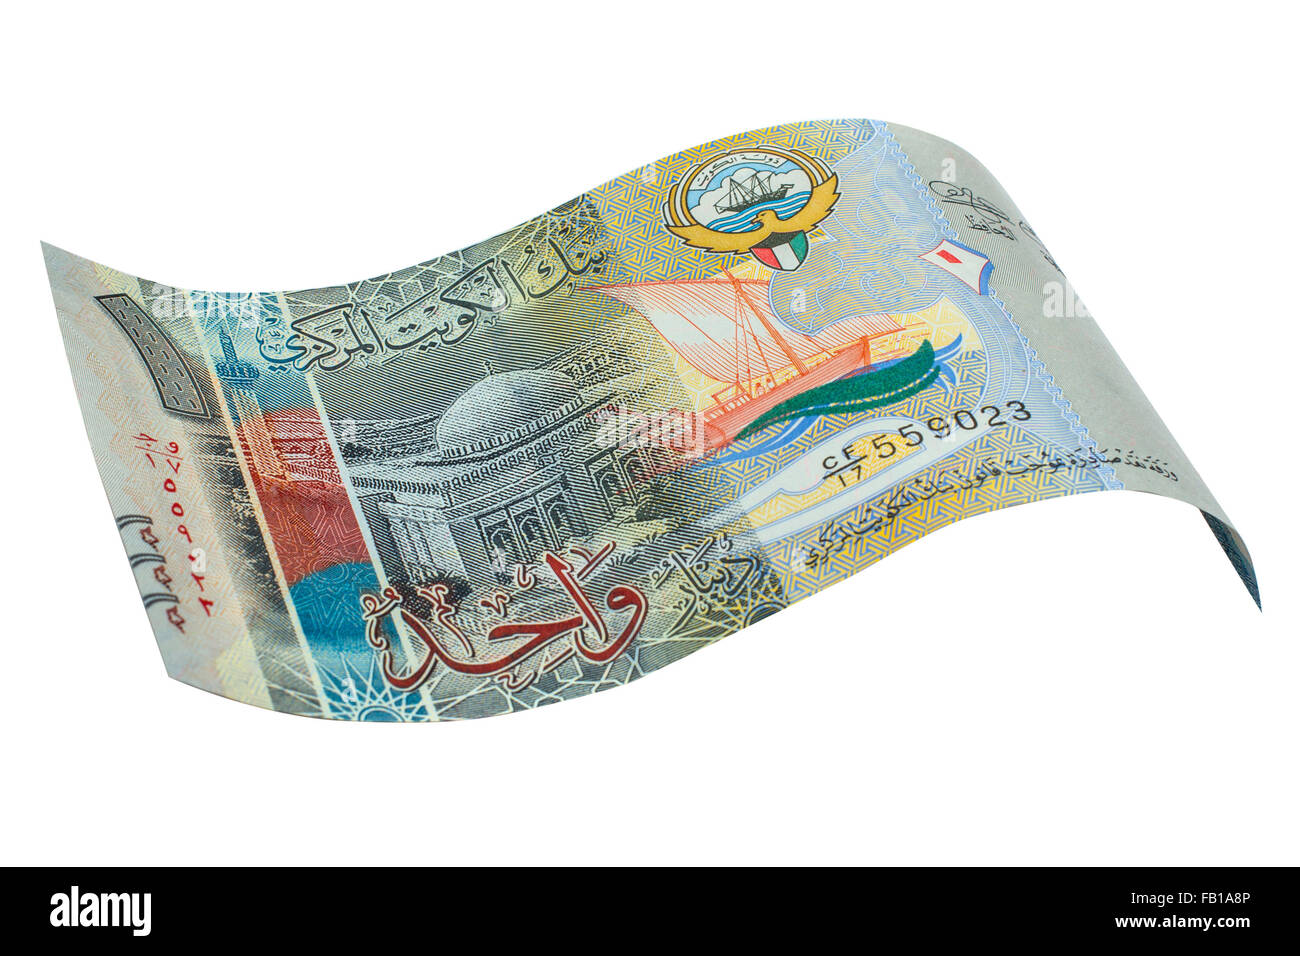 Kuwaiti dinar hi-res stock photography and images - Alamy